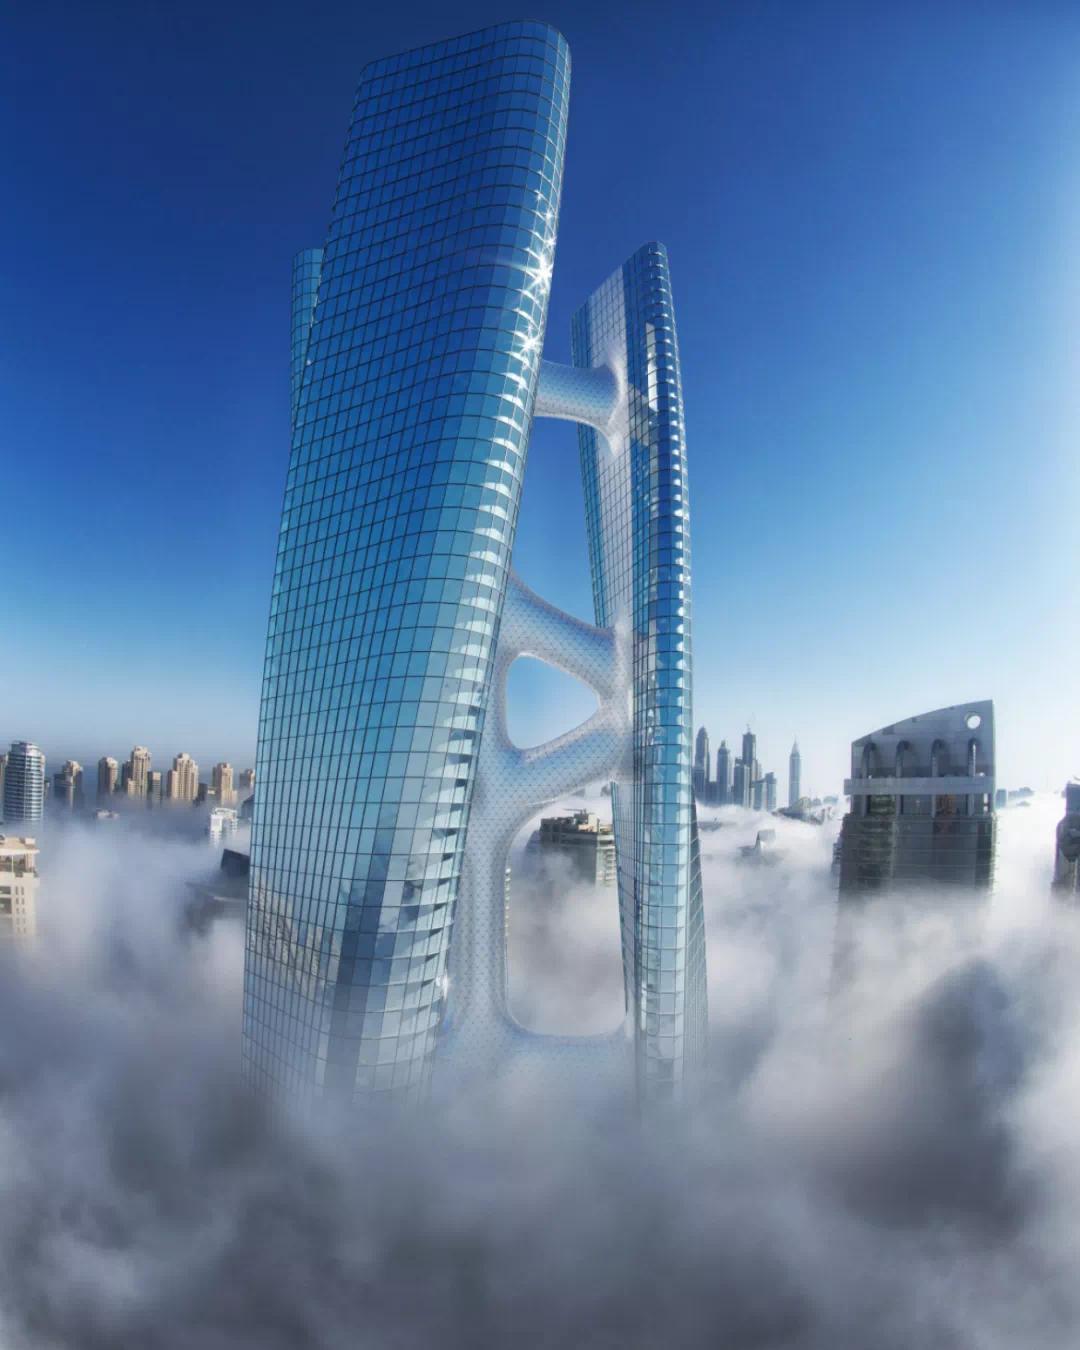 是的,squall tower 大楼能两天带你360度旋转,从不同角度欣赏迪拜风景